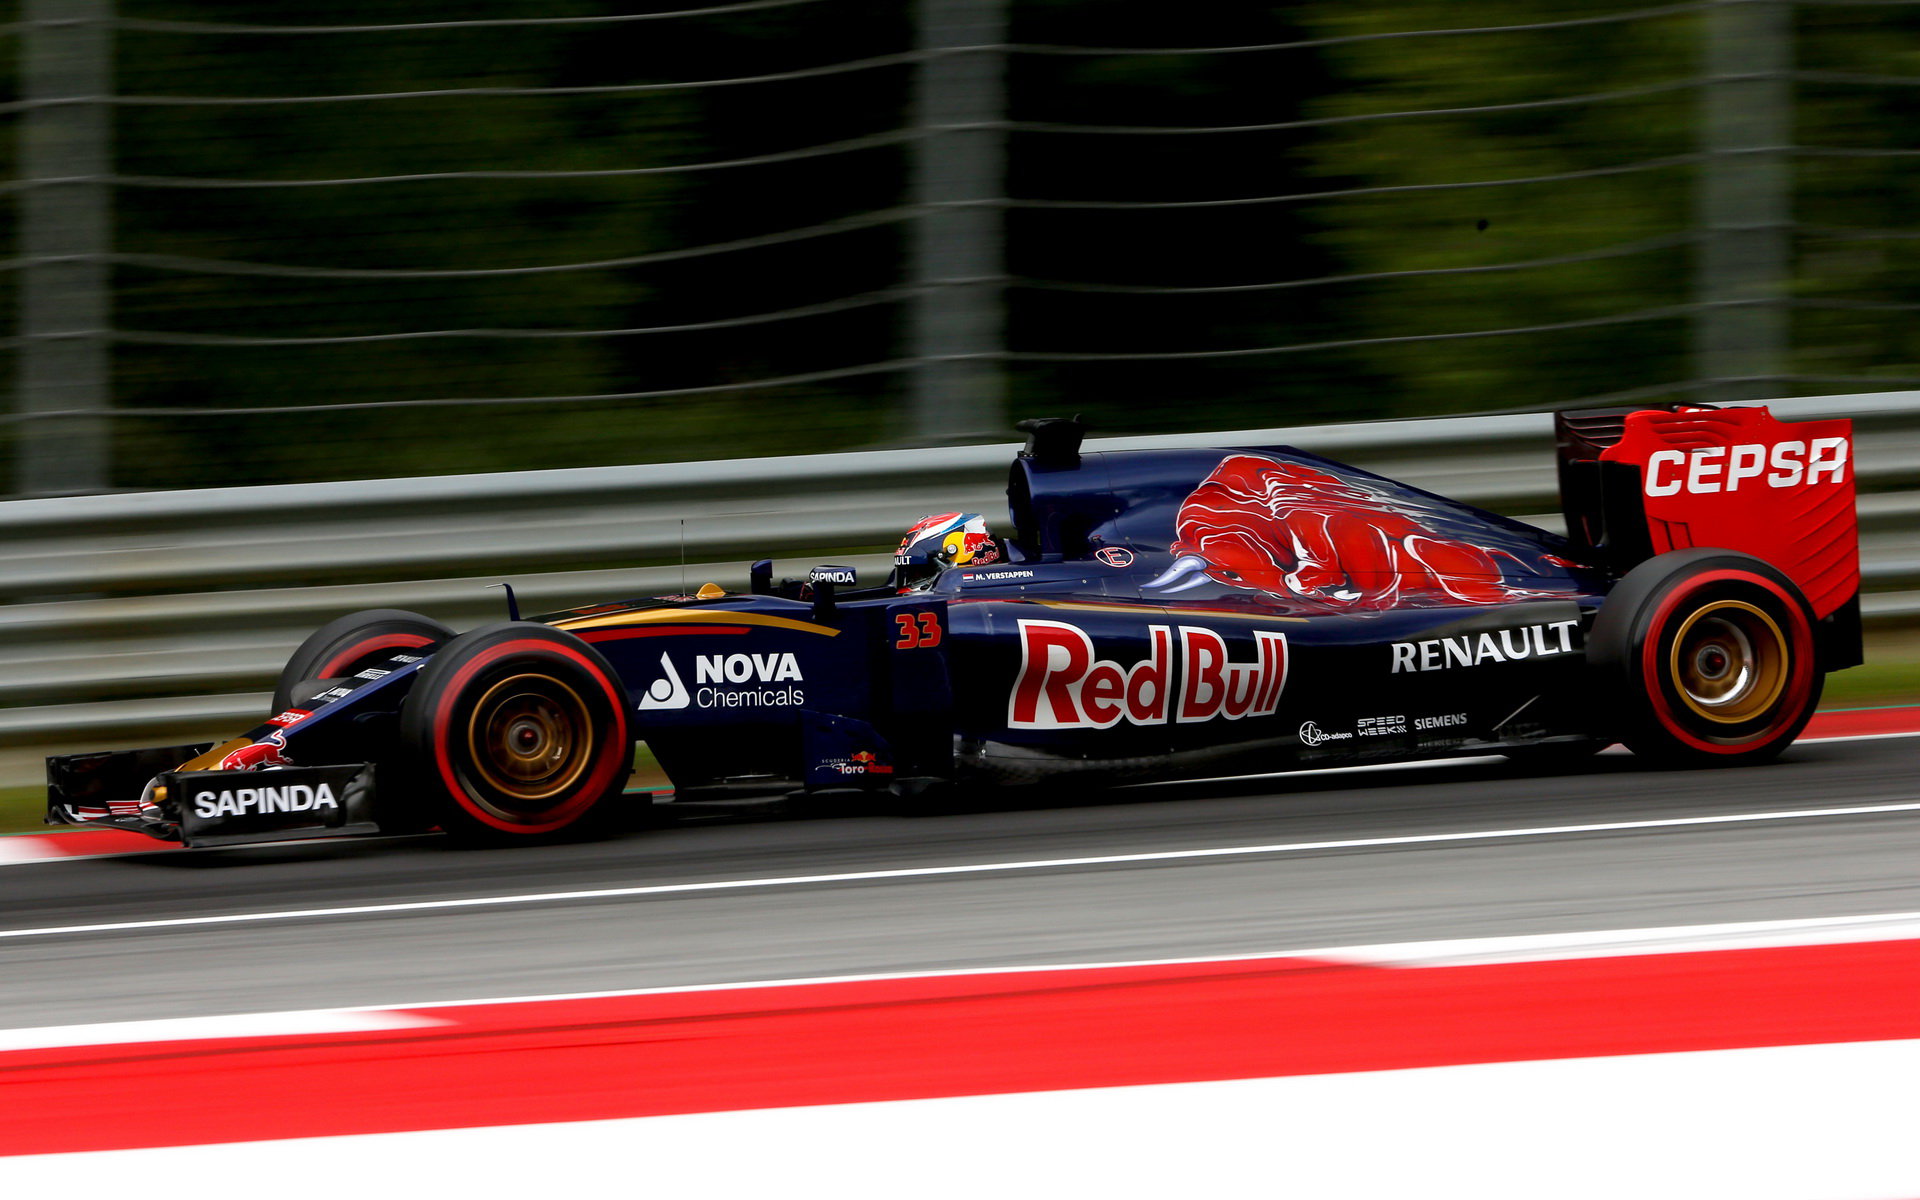 Vozu Toro Rosso schází výkon, Renault stále zaostává o více než 70 koní